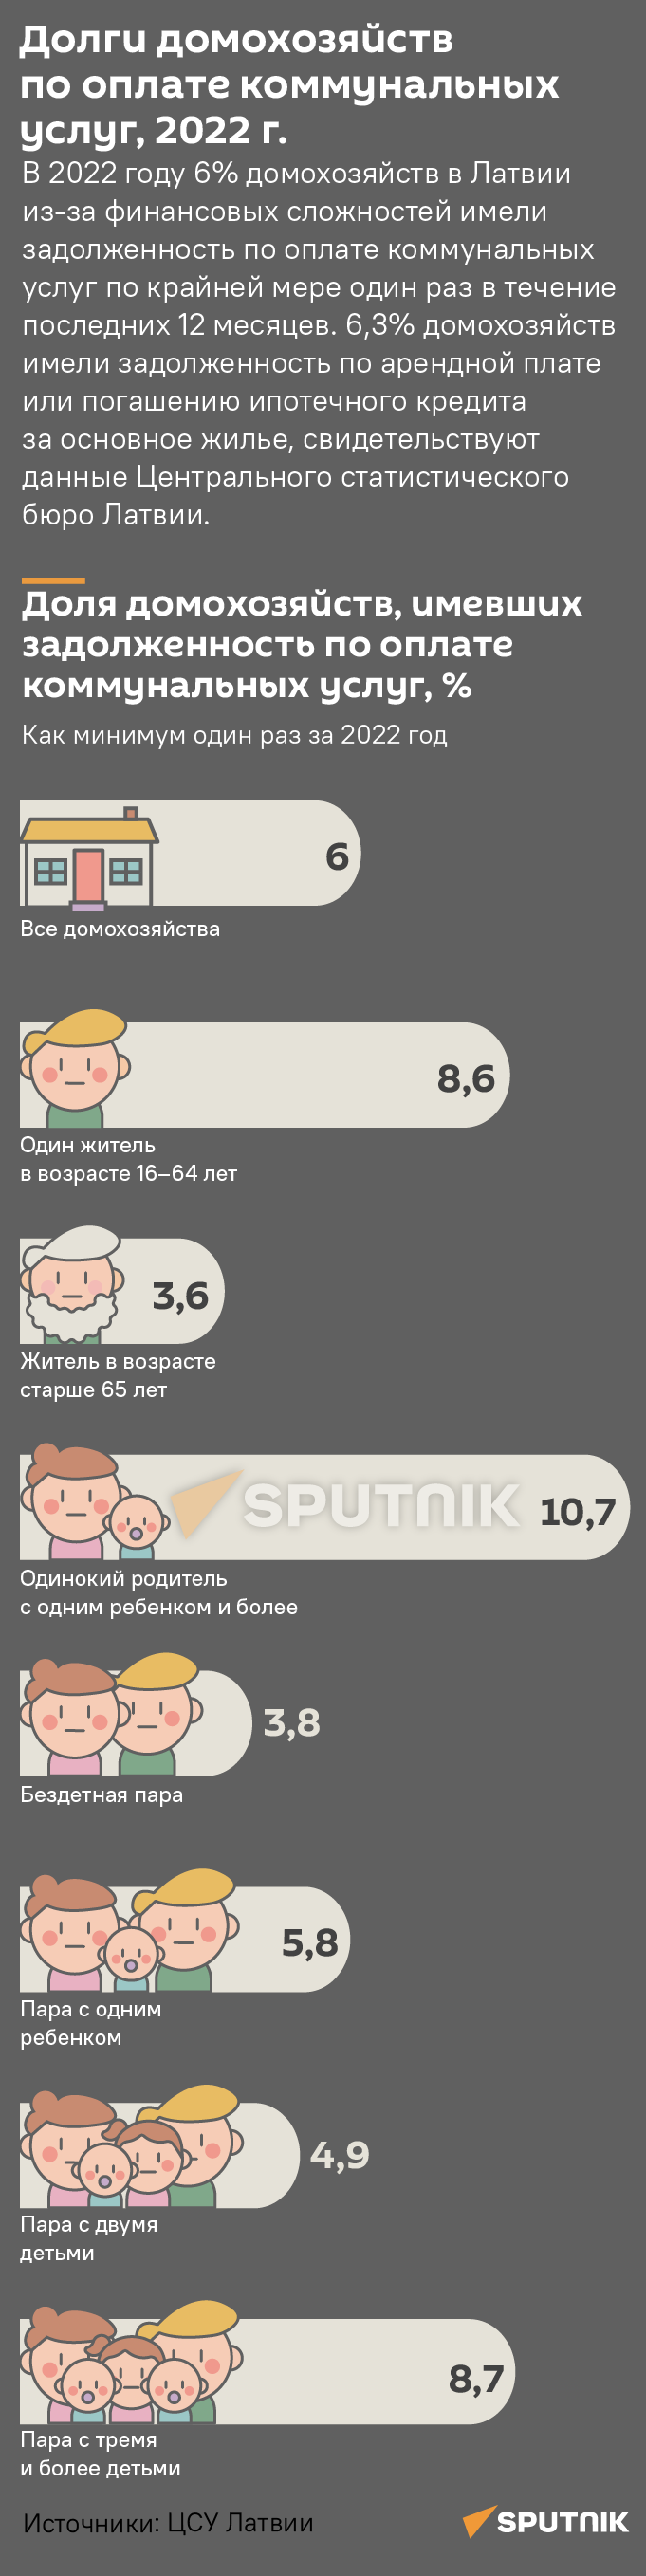 Долги домохозяйств по оплате коммунальных услуг, 2022 г. - Sputnik Латвия